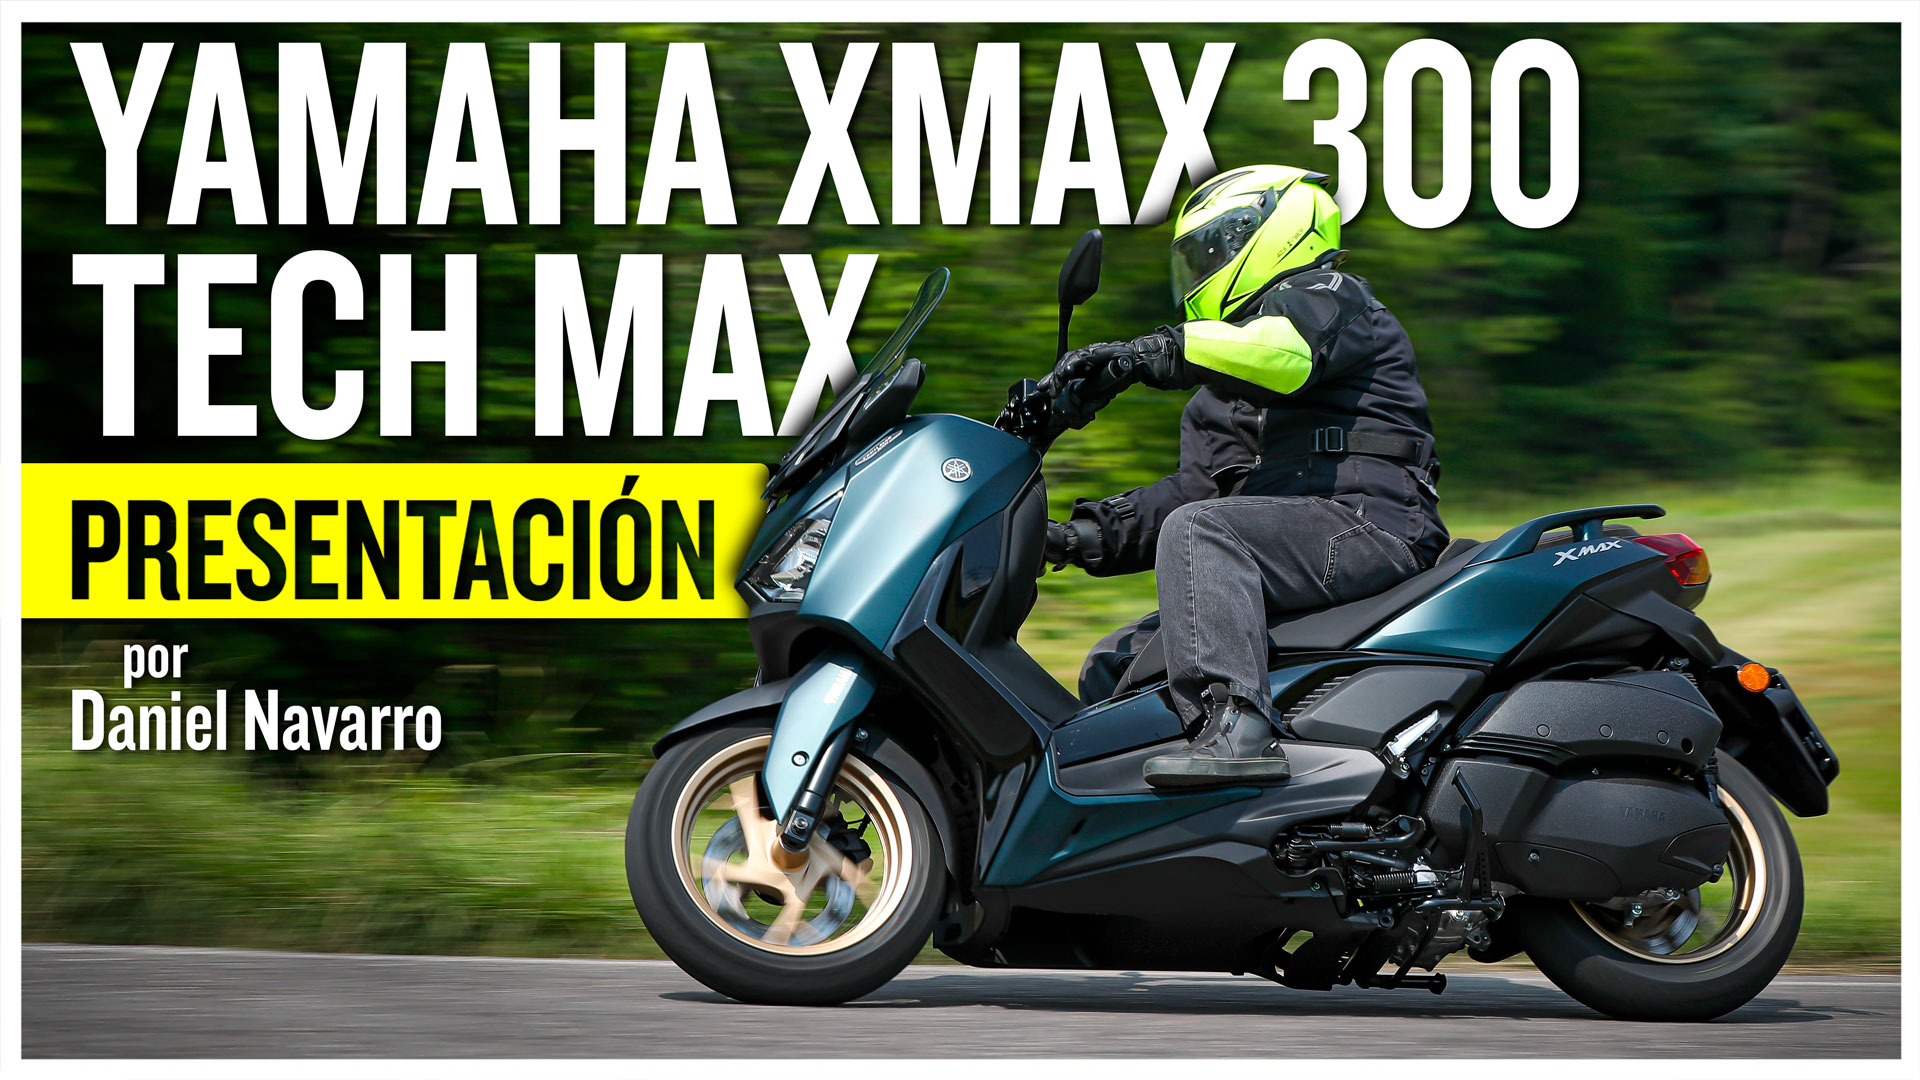 Yamaha XMAX 300